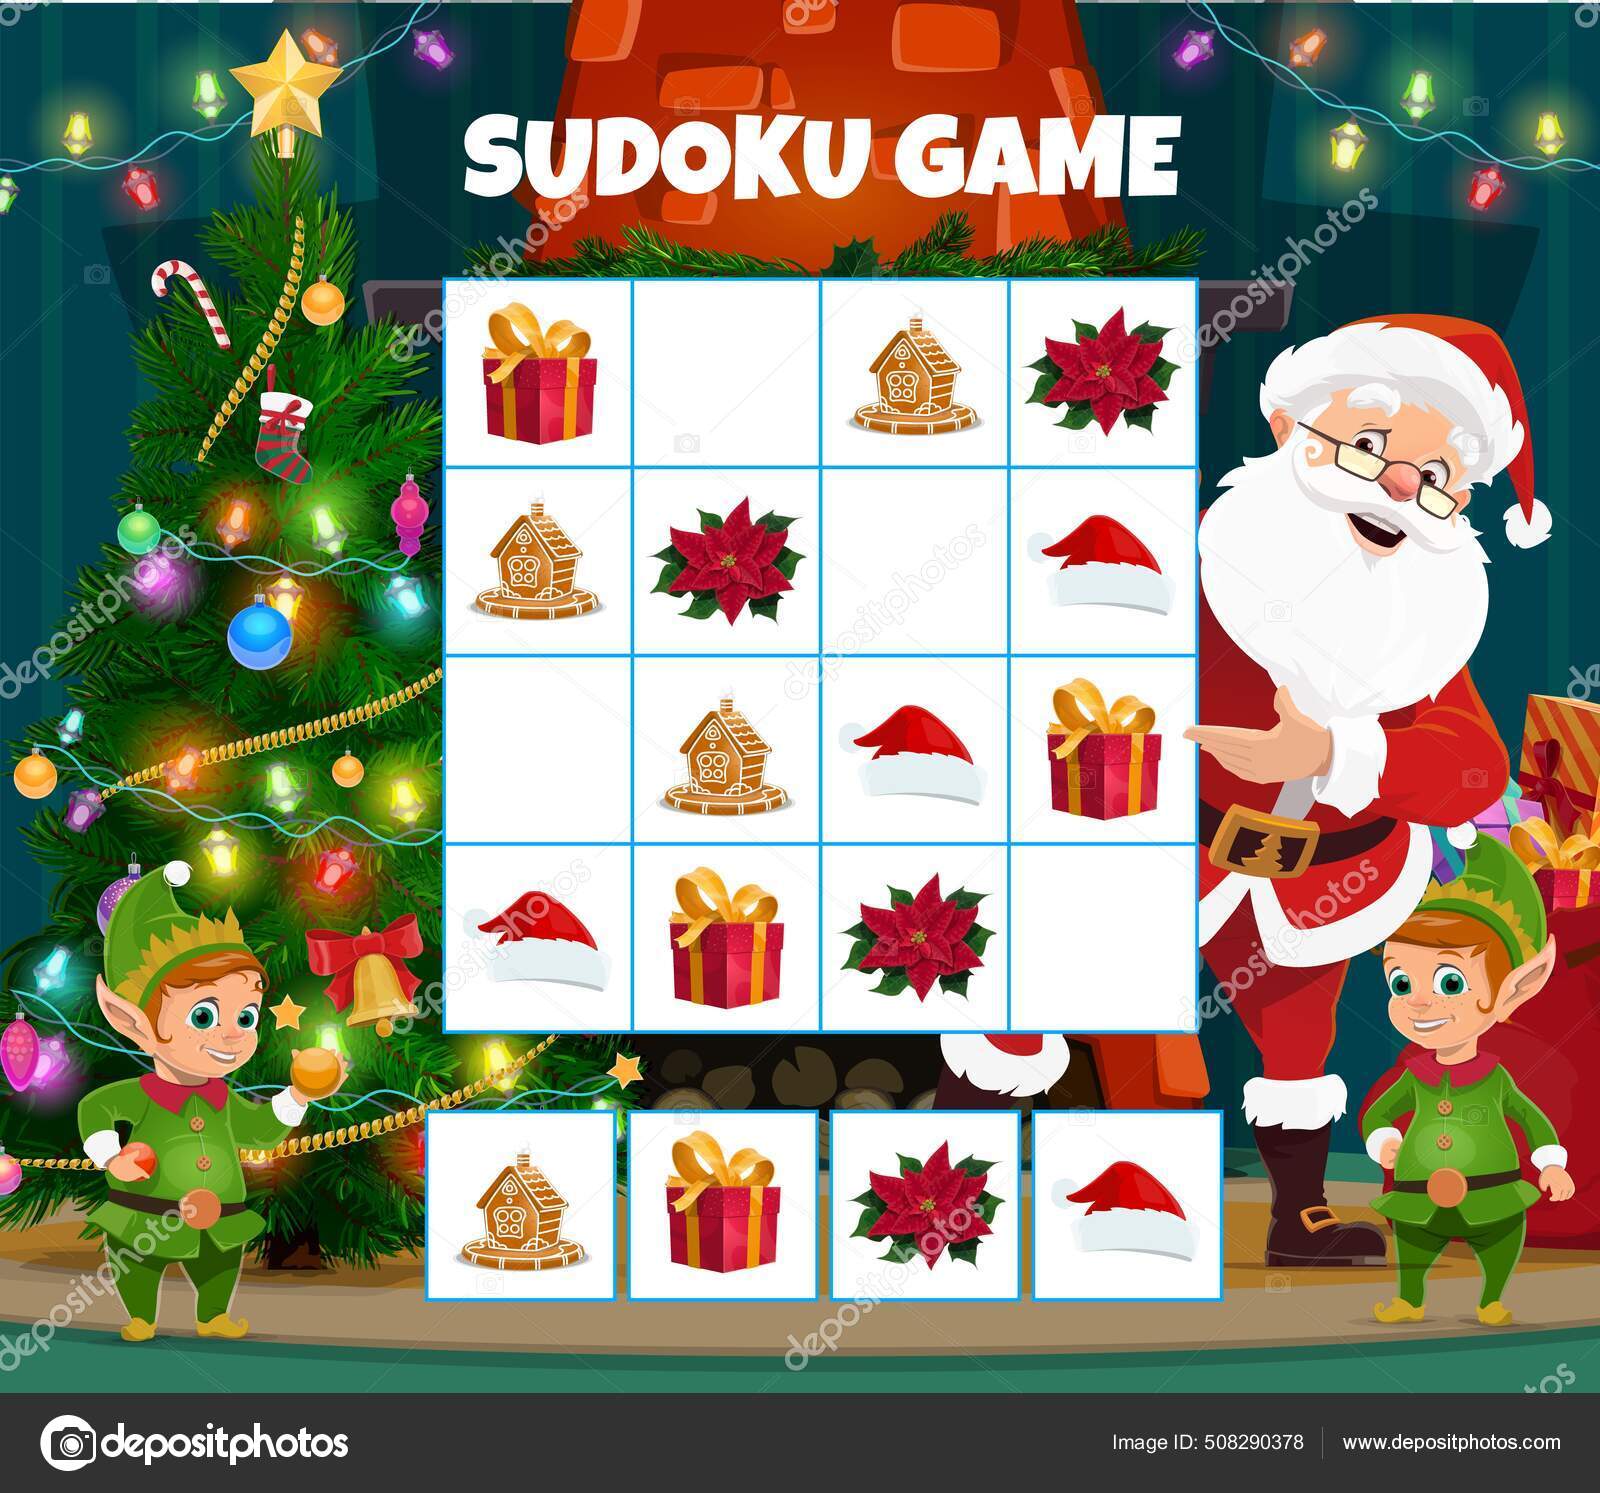 Jogo de sudoku para crianças com fotos. feliz natal e feliz ano novo